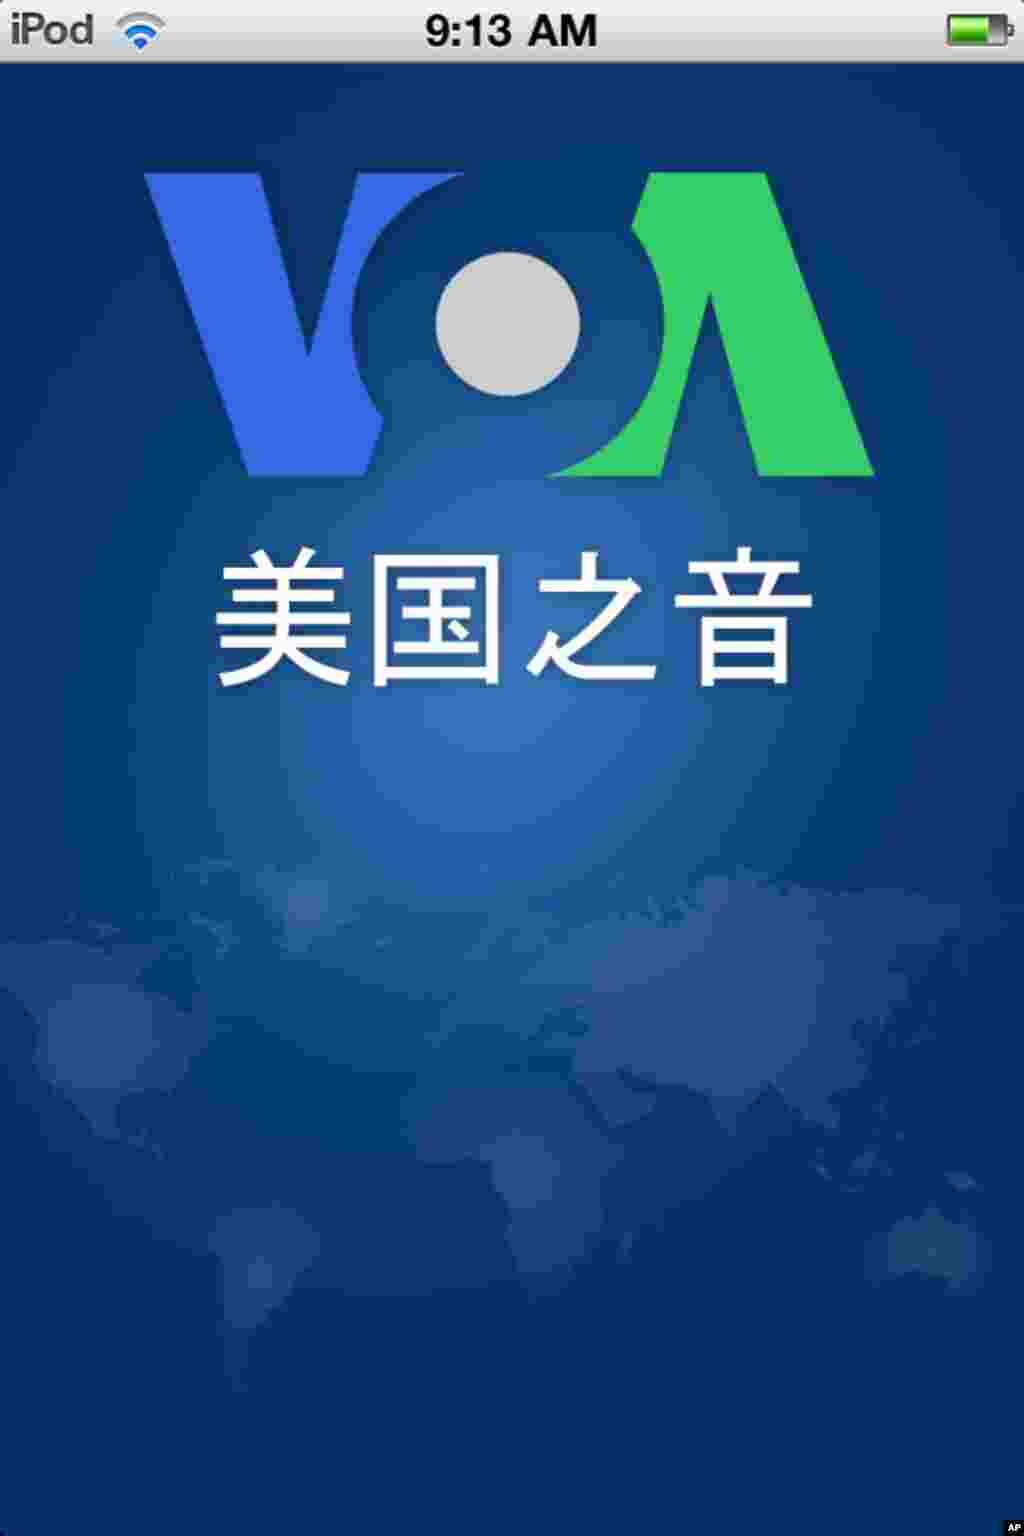 美国之音新闻中文版iPhone 应用程序